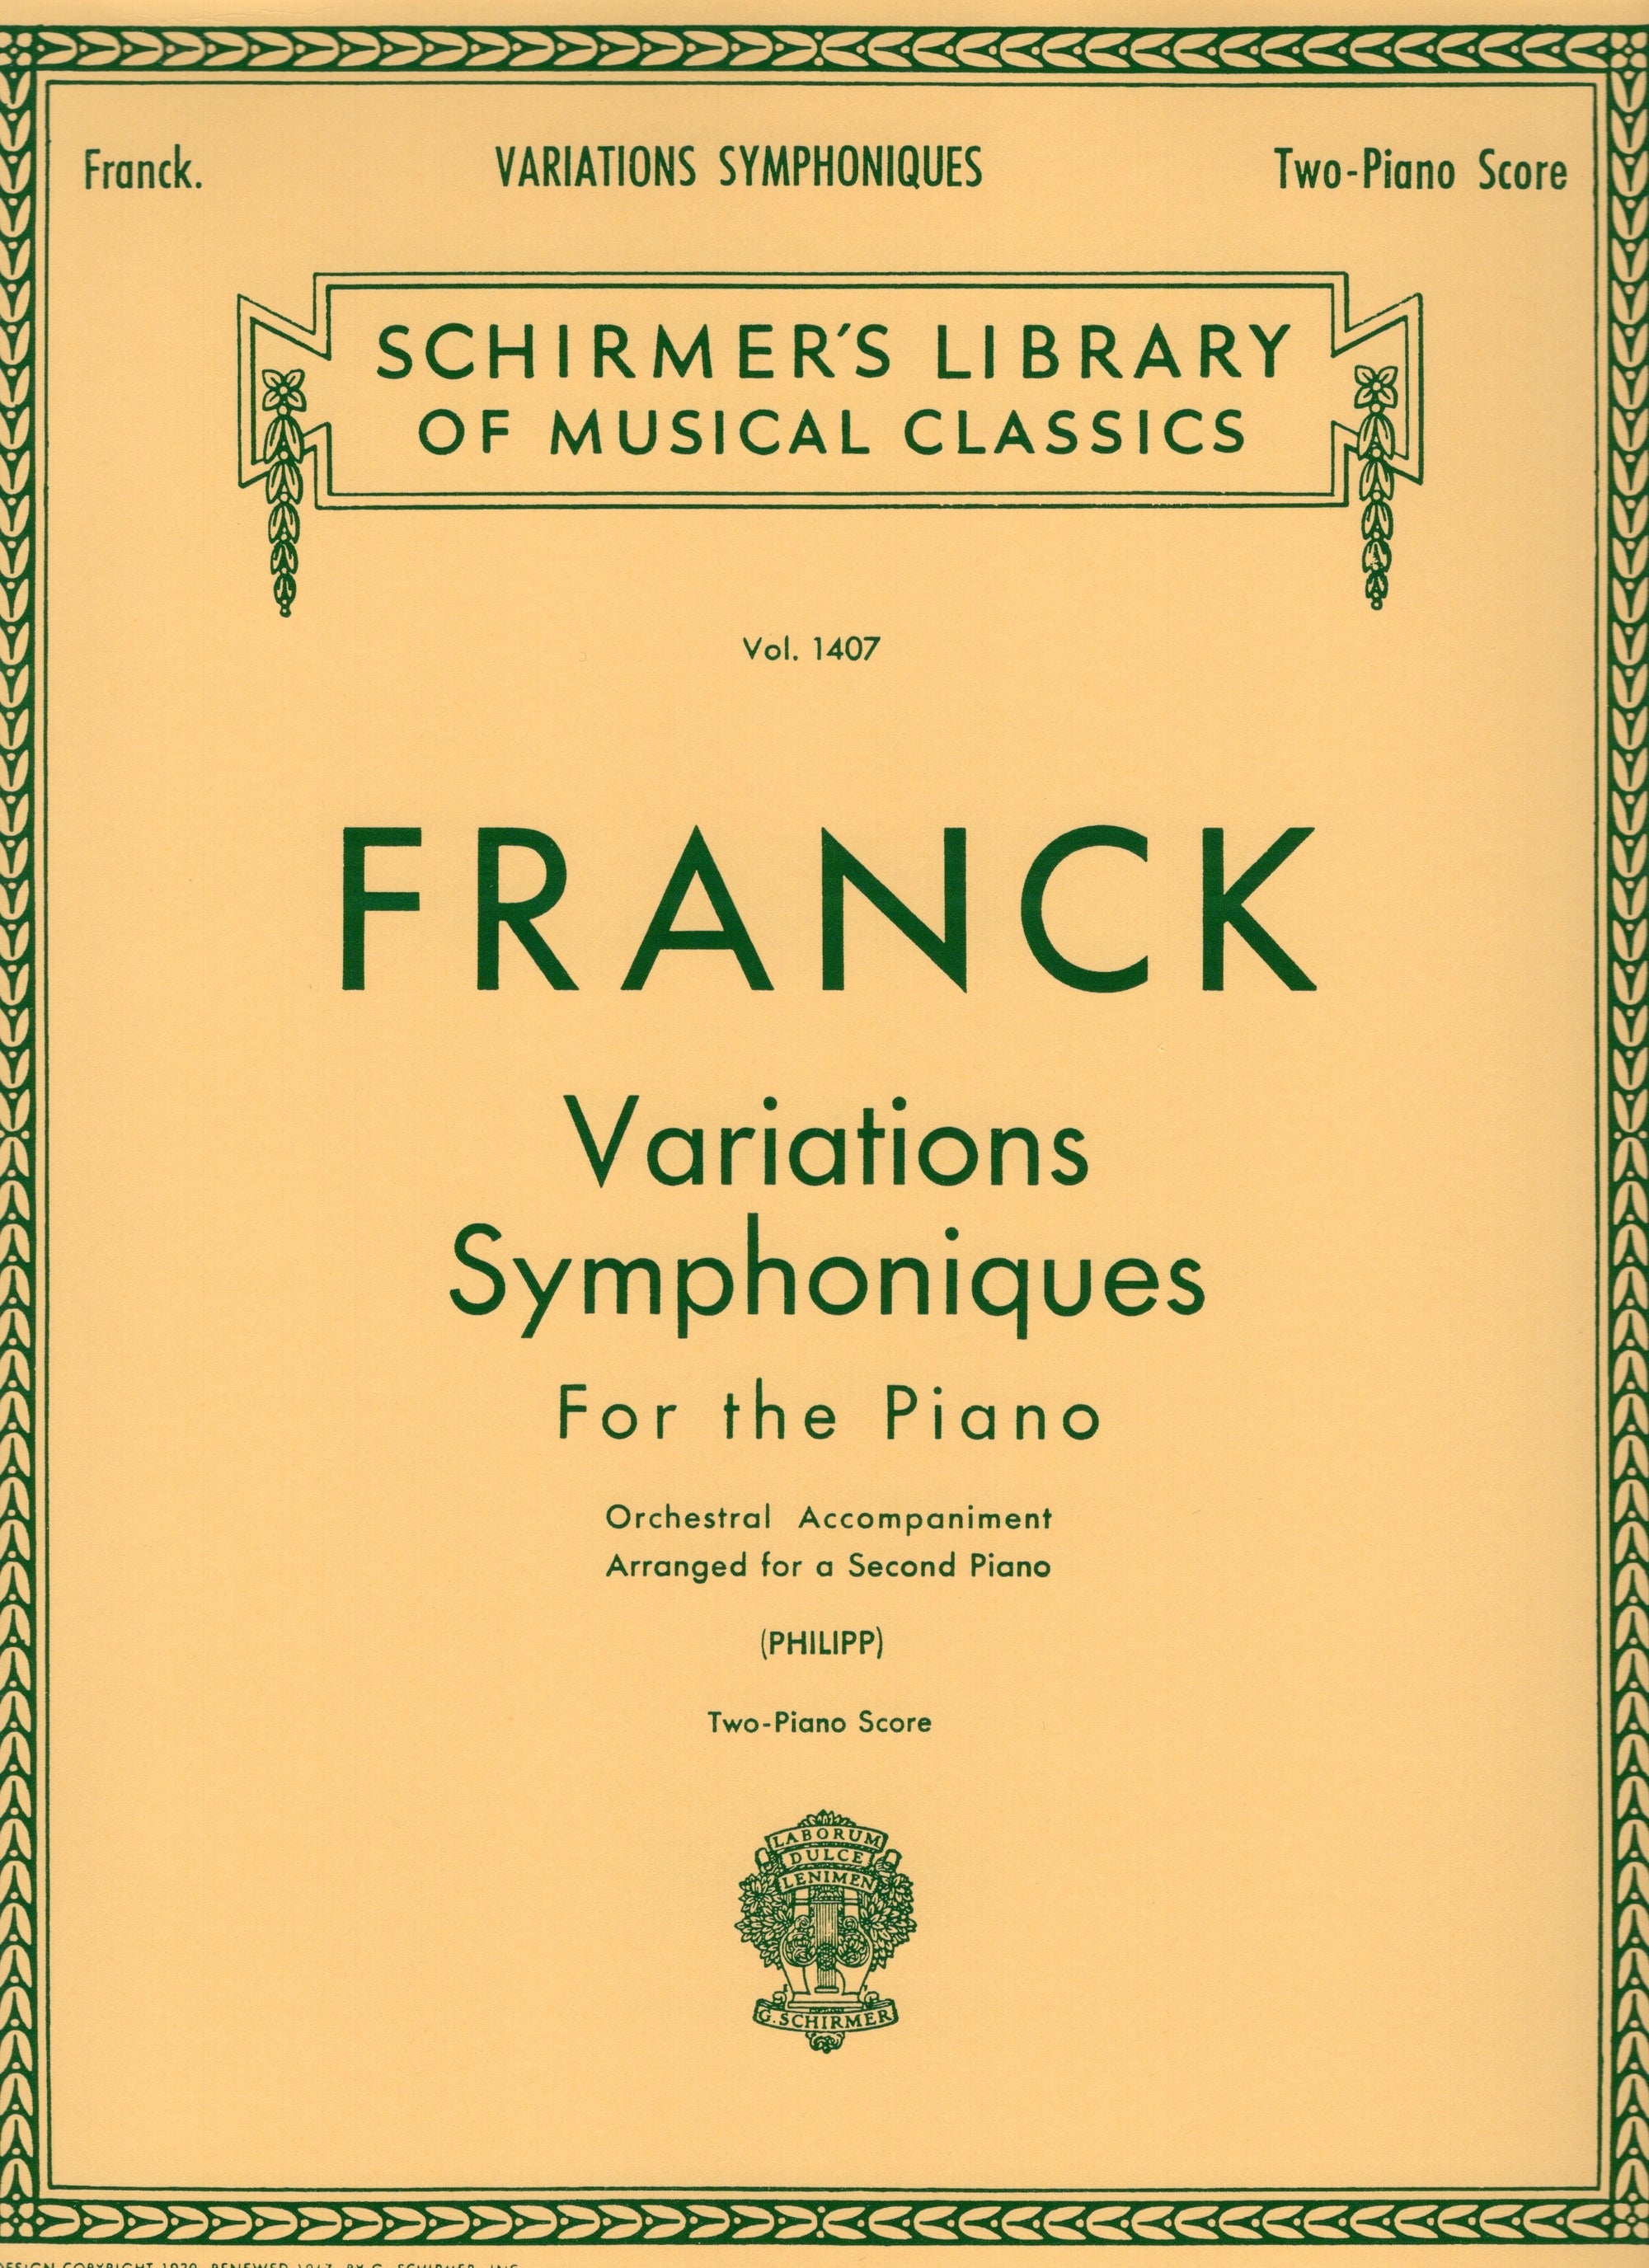 Franck: Variations Symphoniques